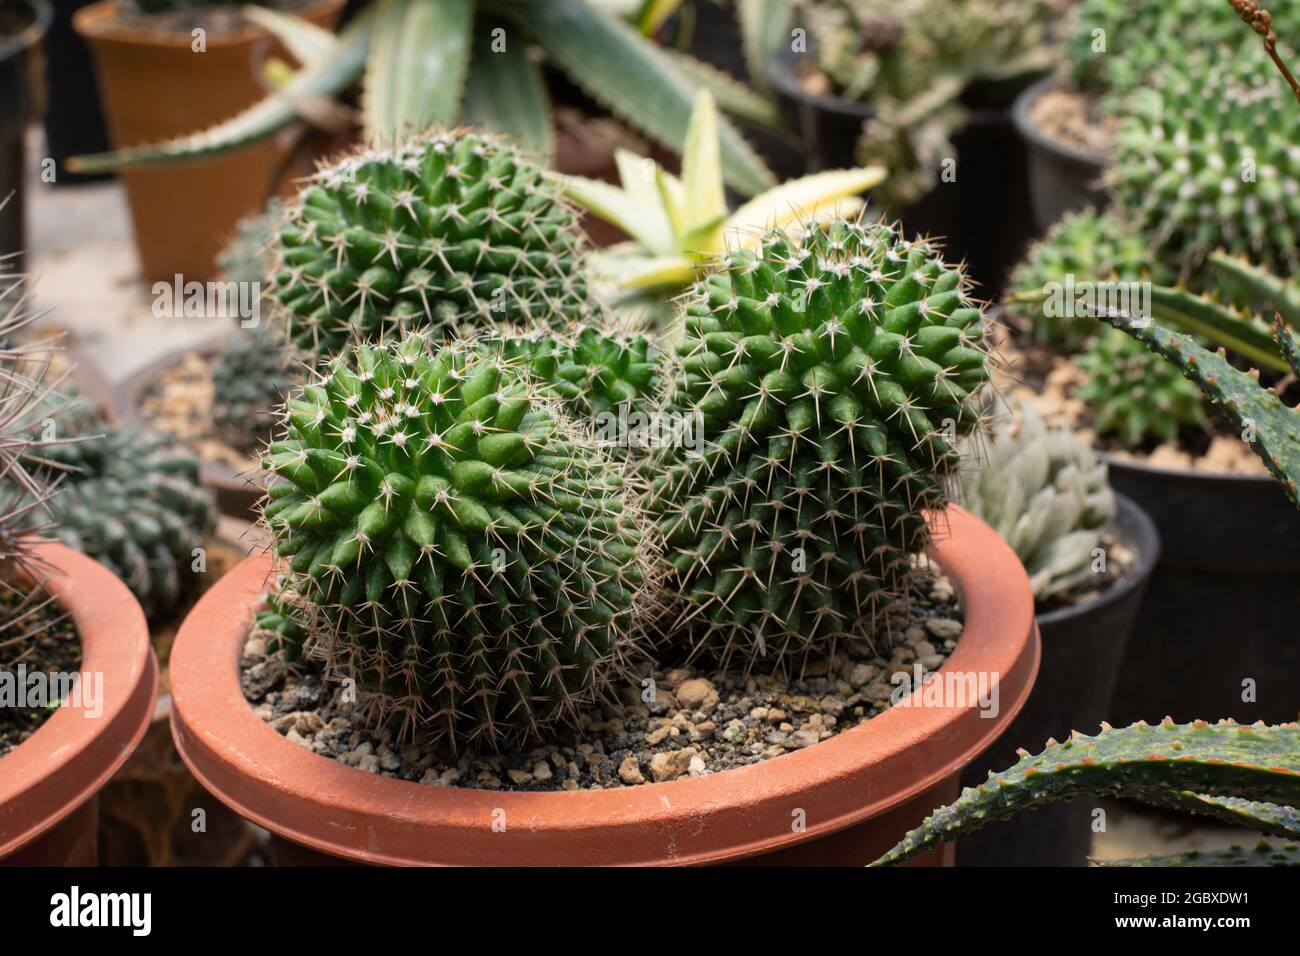 Cactus plants in pots Stock Photo